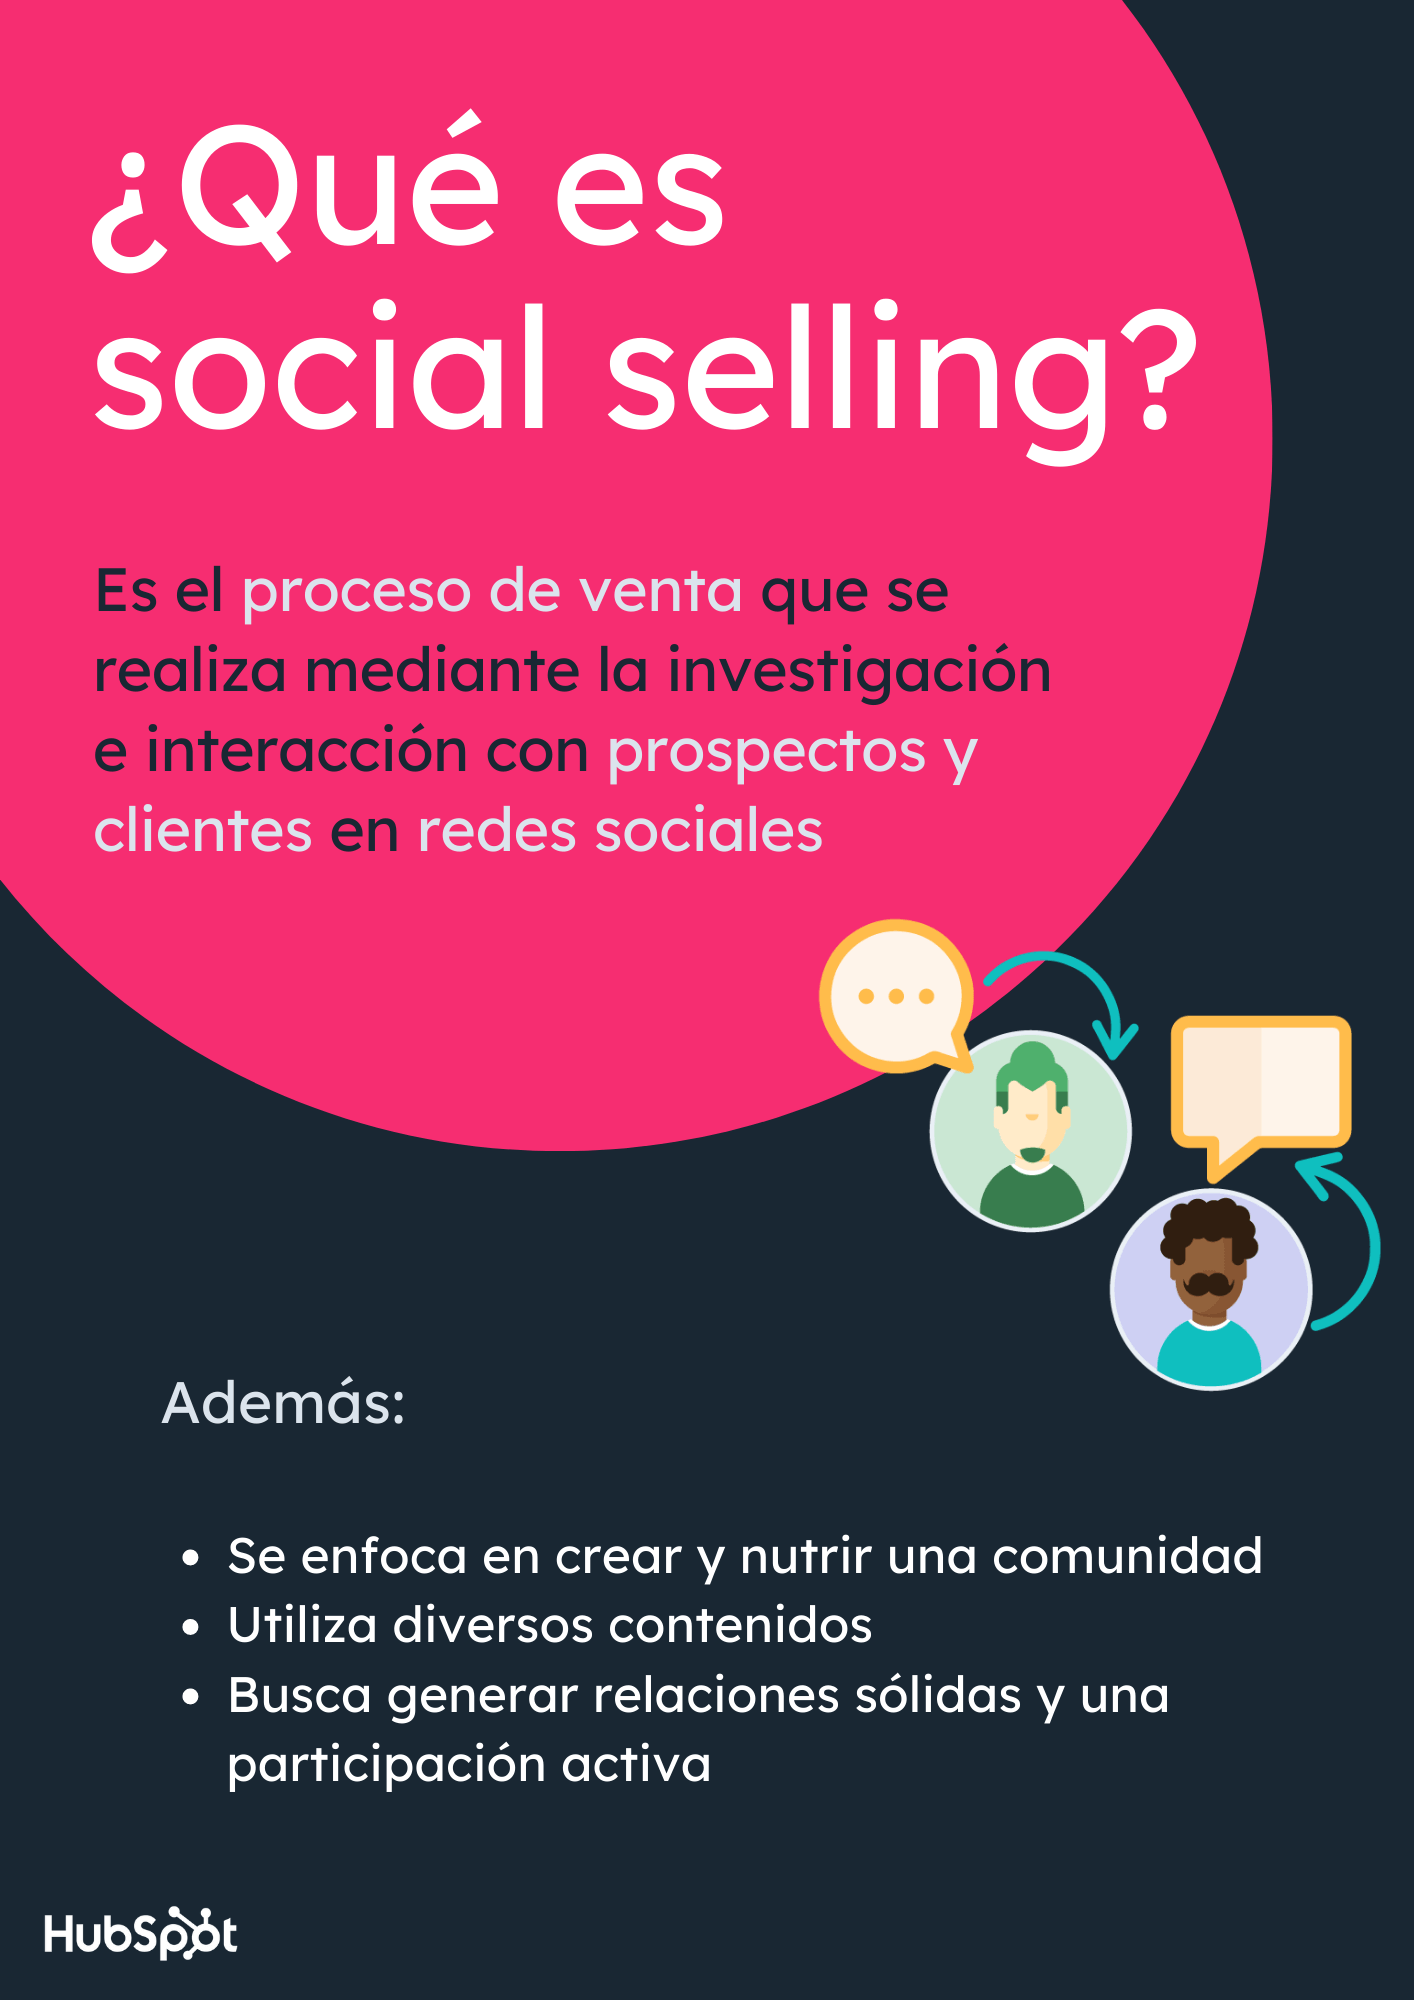 ¿Qué es social selling?